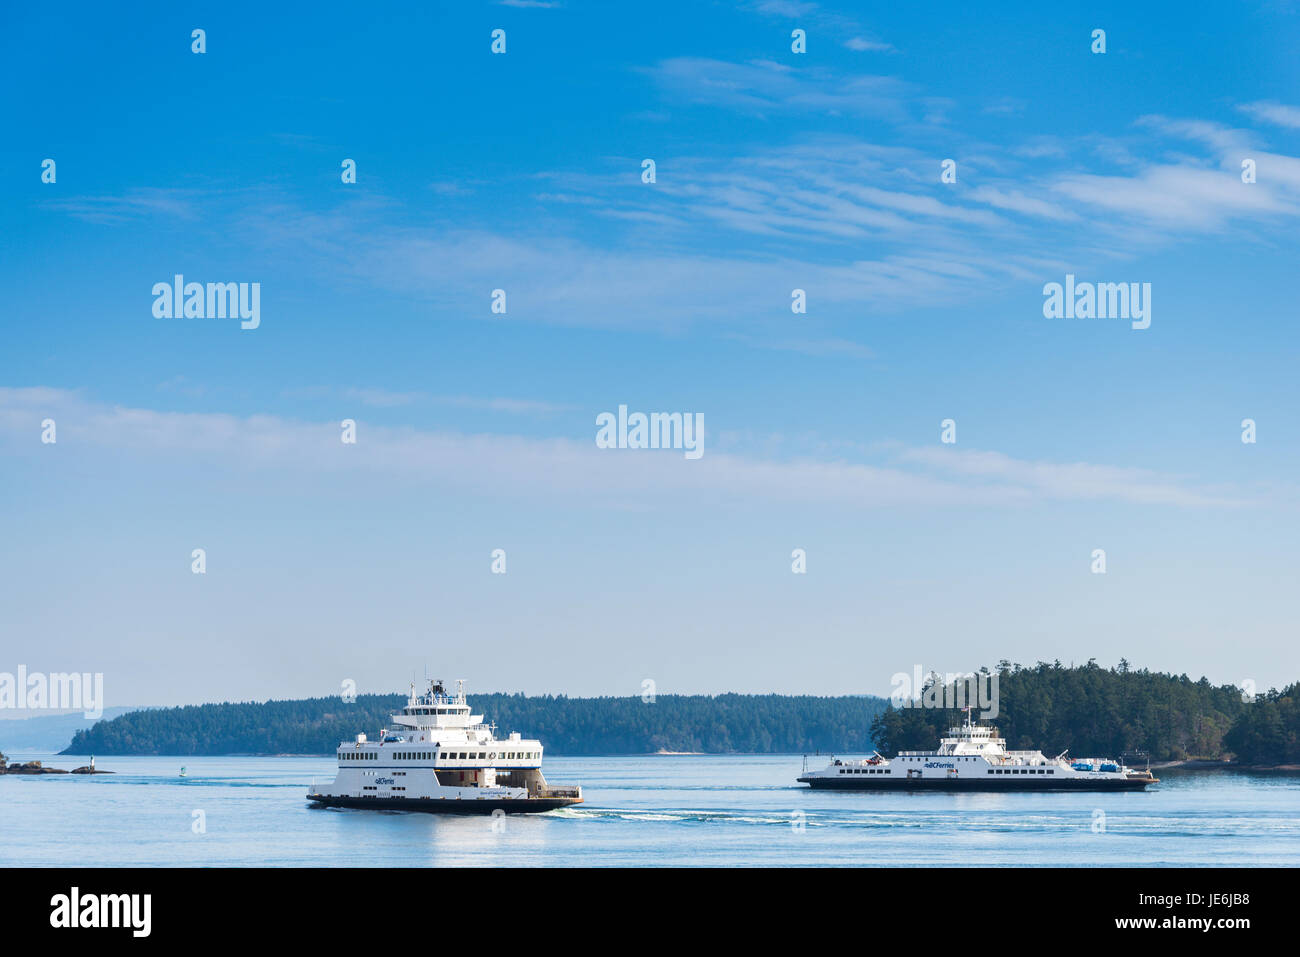 British Columbia Ferries, near Schwartz Bay, British Columbia, Canada Stock Photo